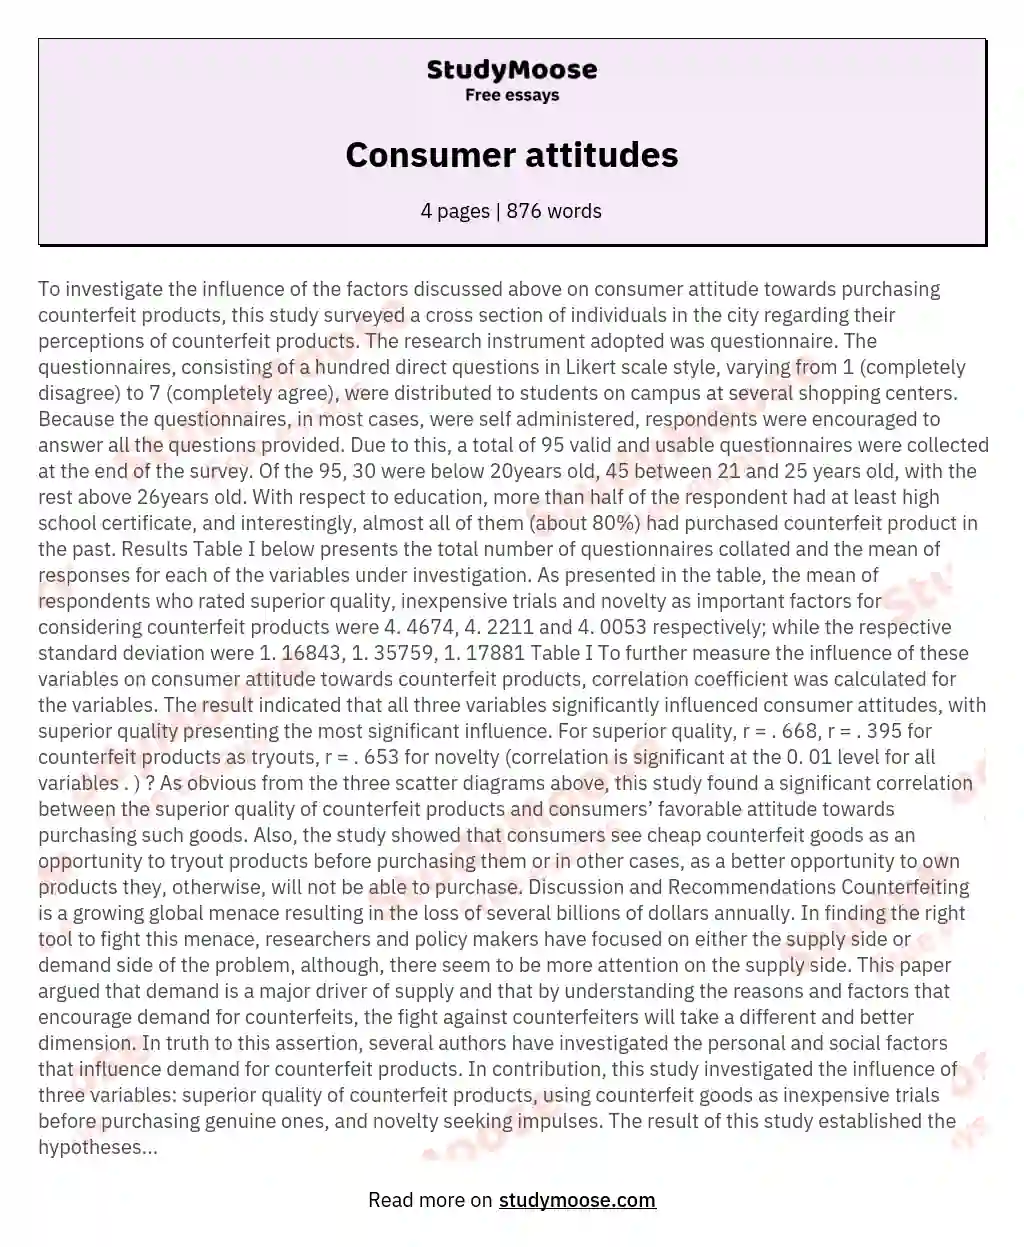 Consumer attitudes essay